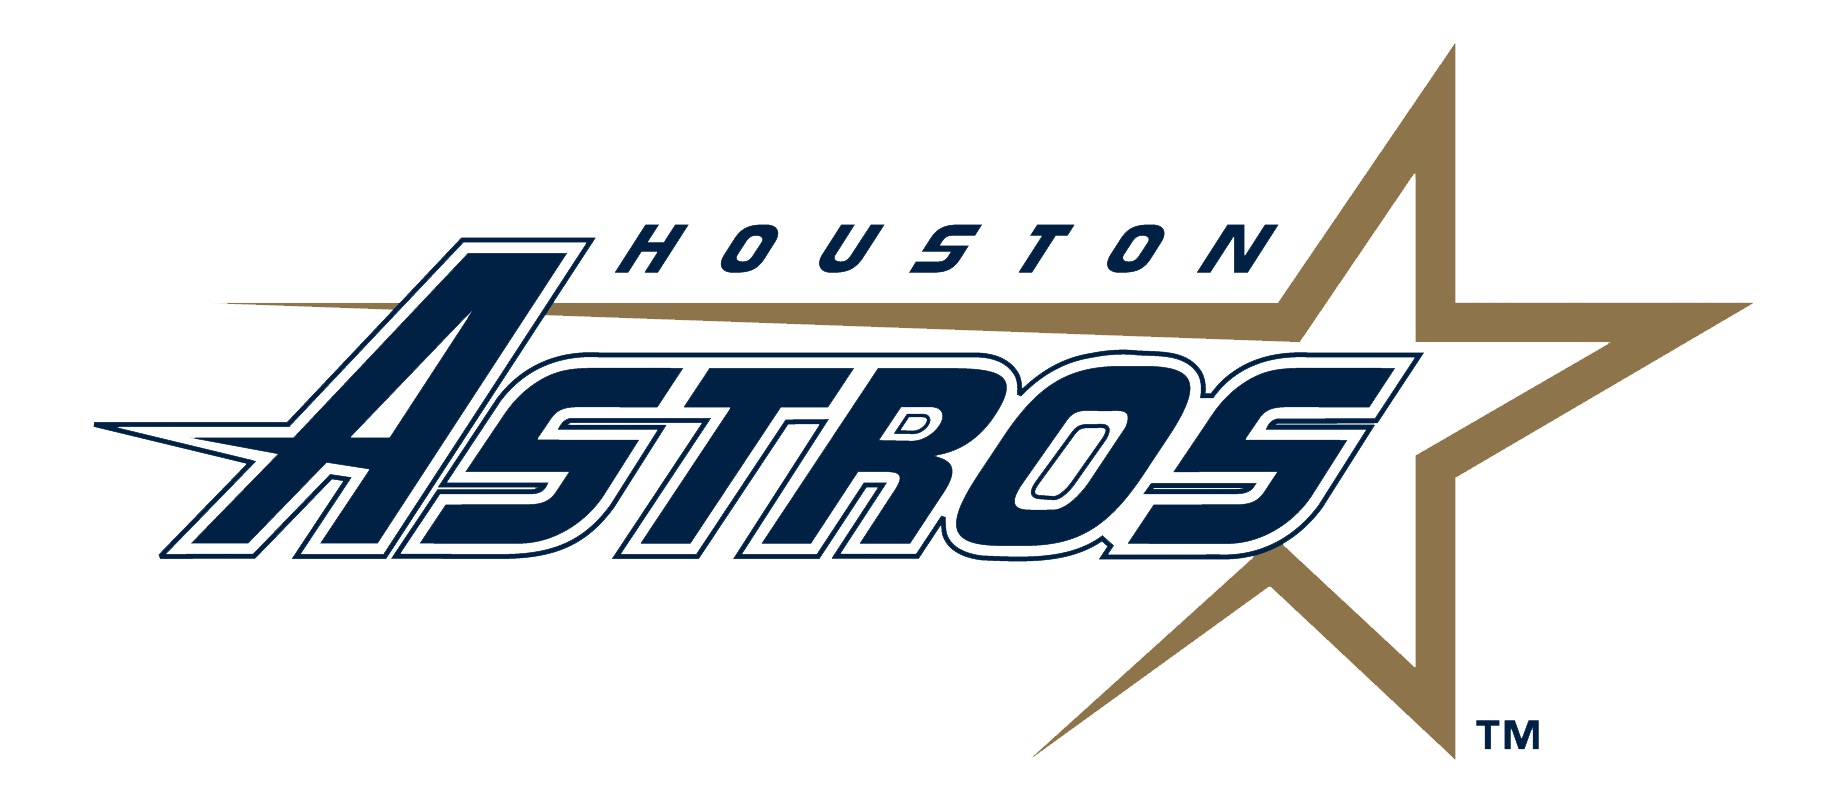 Houston Astros Logo PNG File pngteam.com